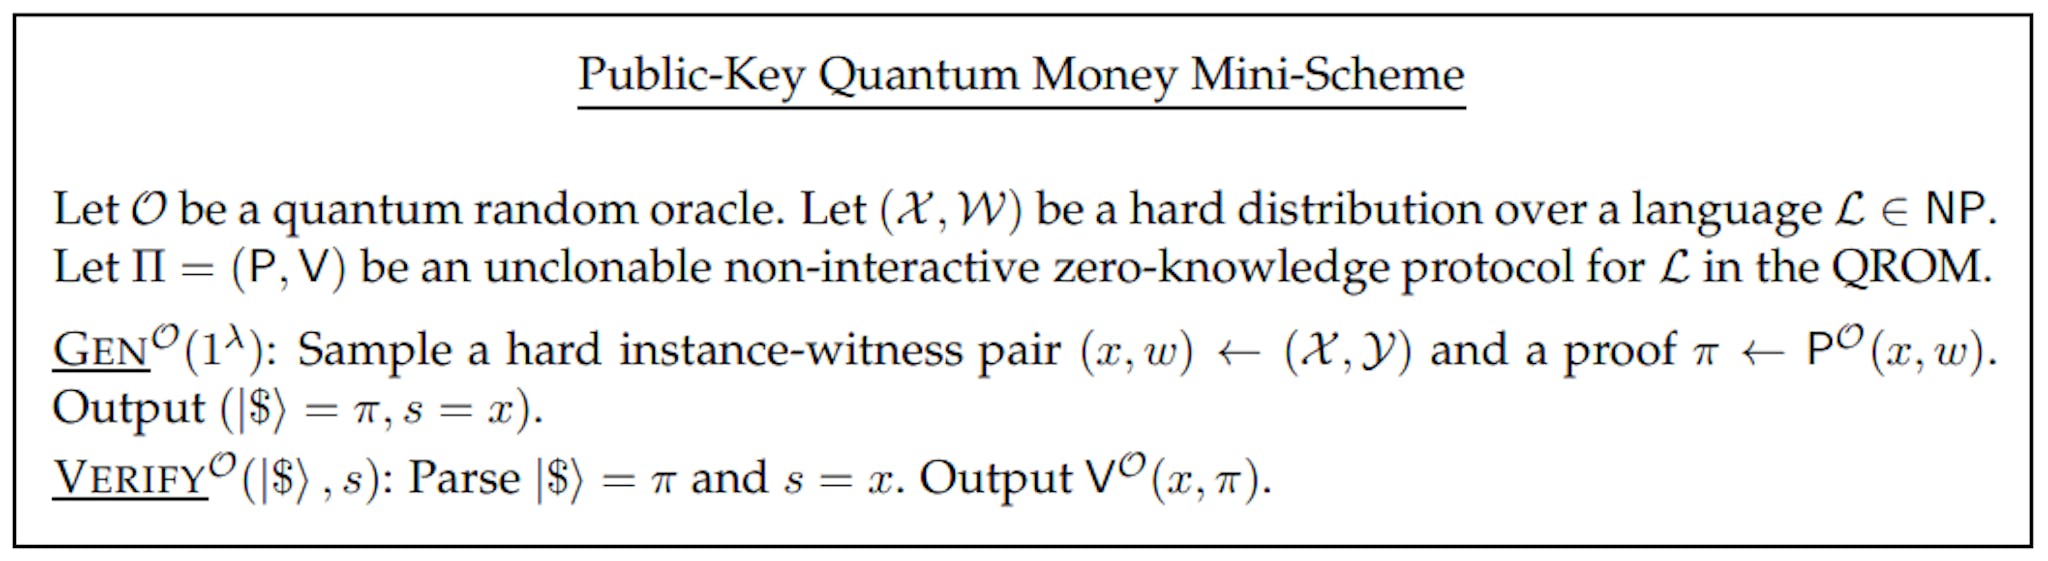 그림 4: 복제 불가능한 비대화형 양자 프로토콜의 공개 키 양자 화폐 미니 체계